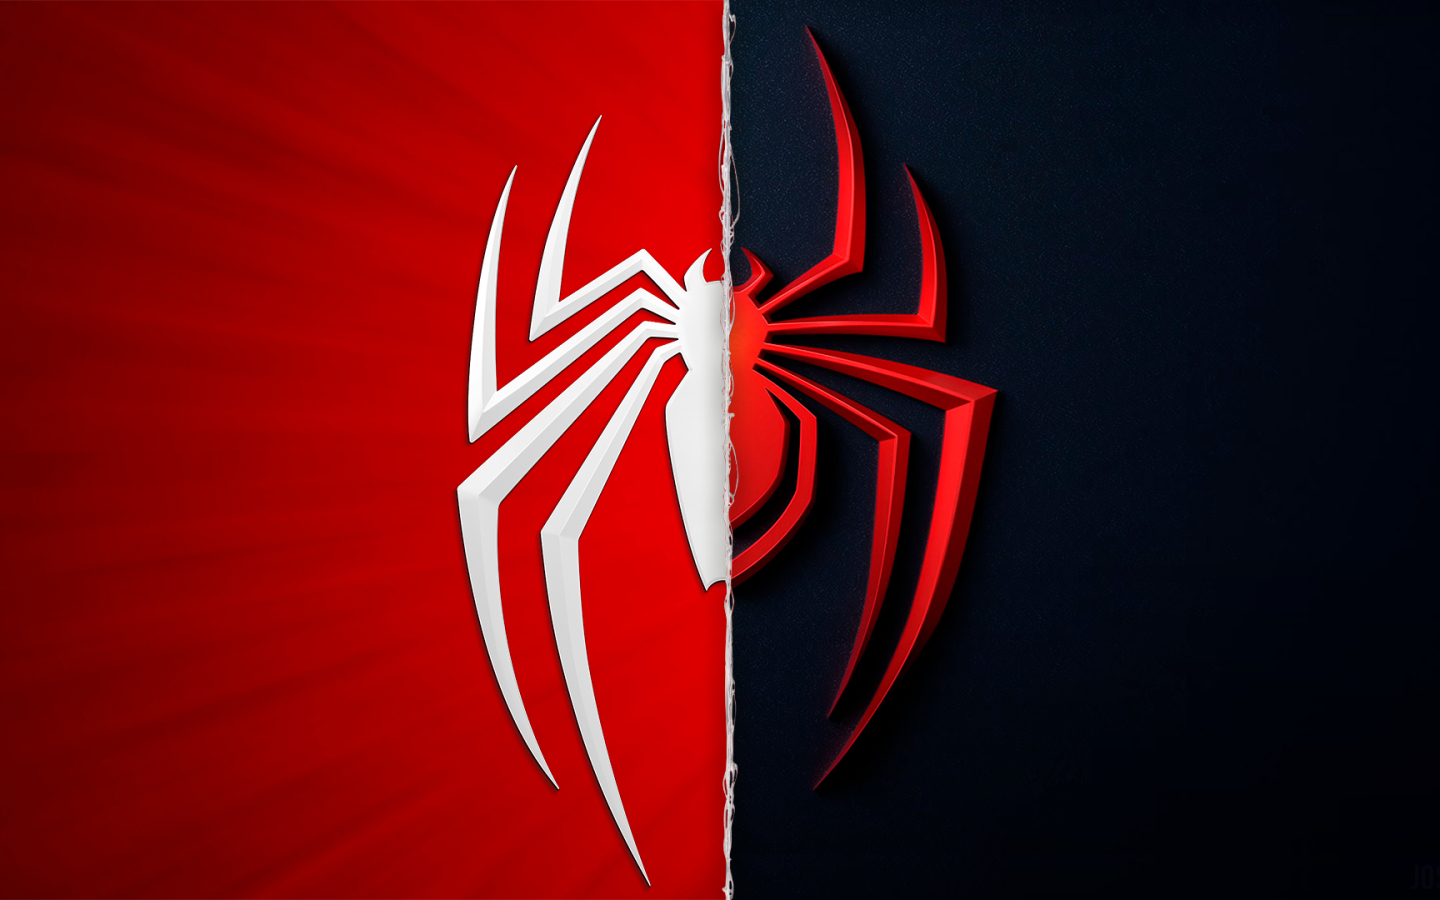 Marvel's Spider-Man Miles Morales Logo (1440x900) Resolution Wallpaper...